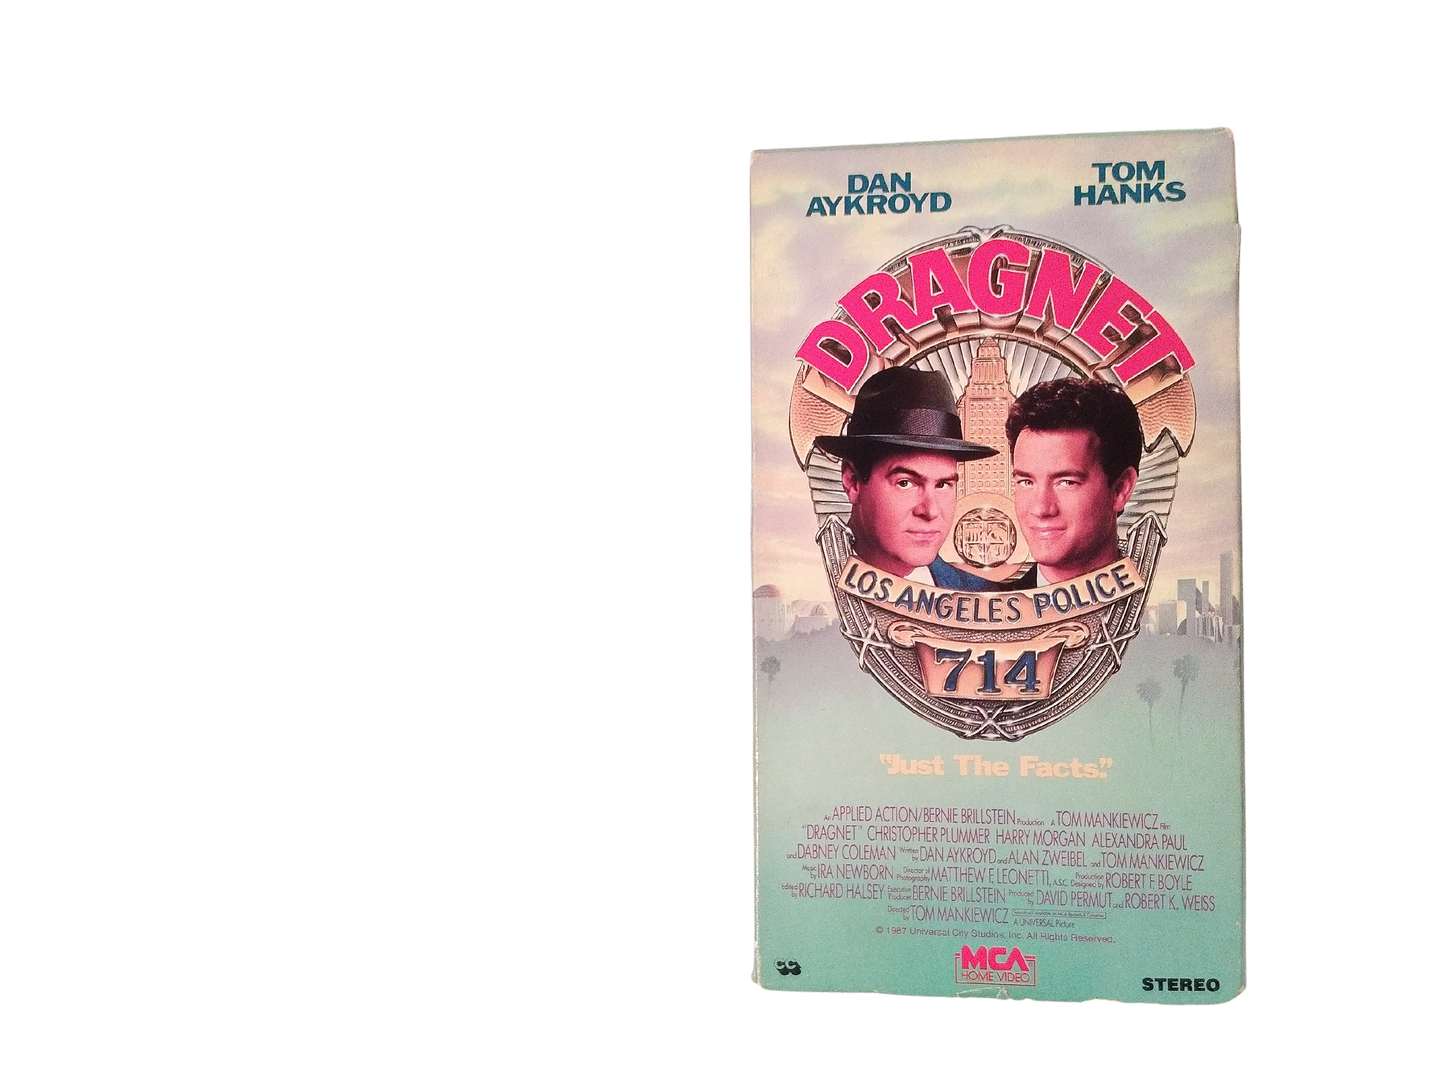 Dragnet VHS - Starring Dan Aykroyd and Tom Hanks